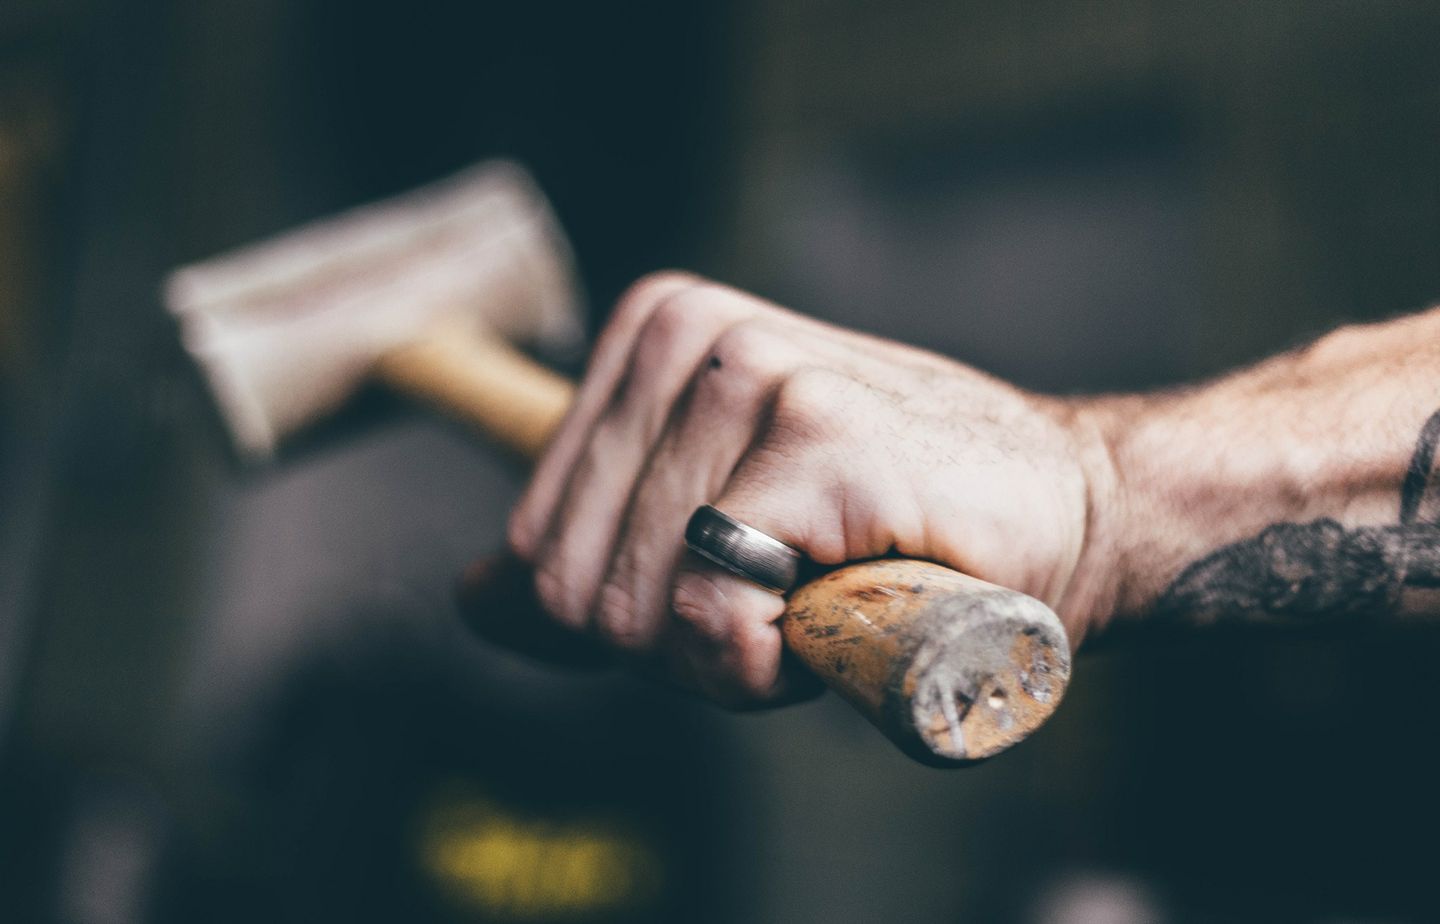 An industrious hand holding a hammer.